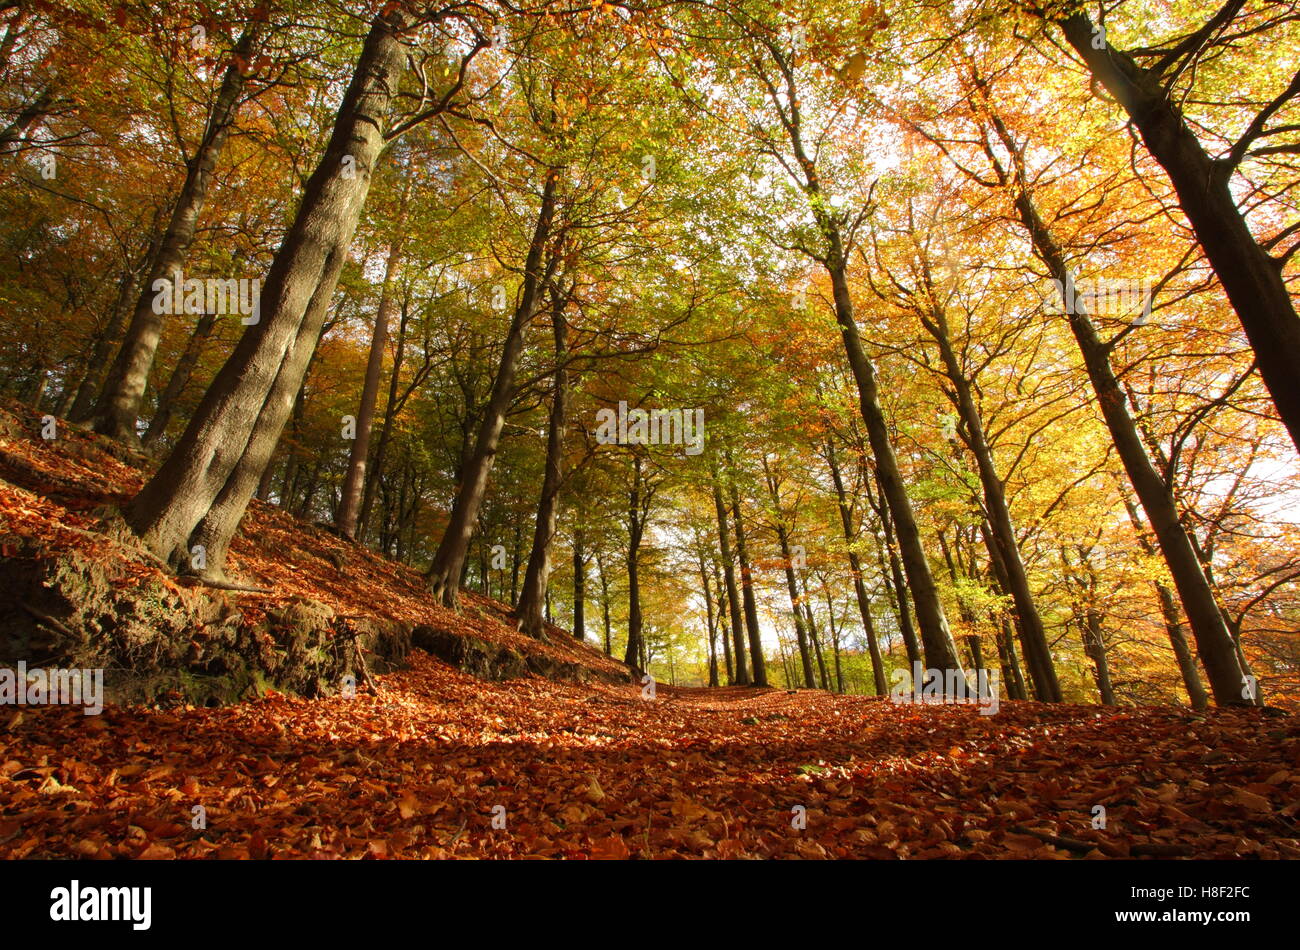 Jusqu'à l'automne à la canopée de hêtres (Fagus sylvatica) dans la Haute Vallée de Derwent, parc national de Peak District Derbyshire, Angleterre, Royaume-Uni Banque D'Images